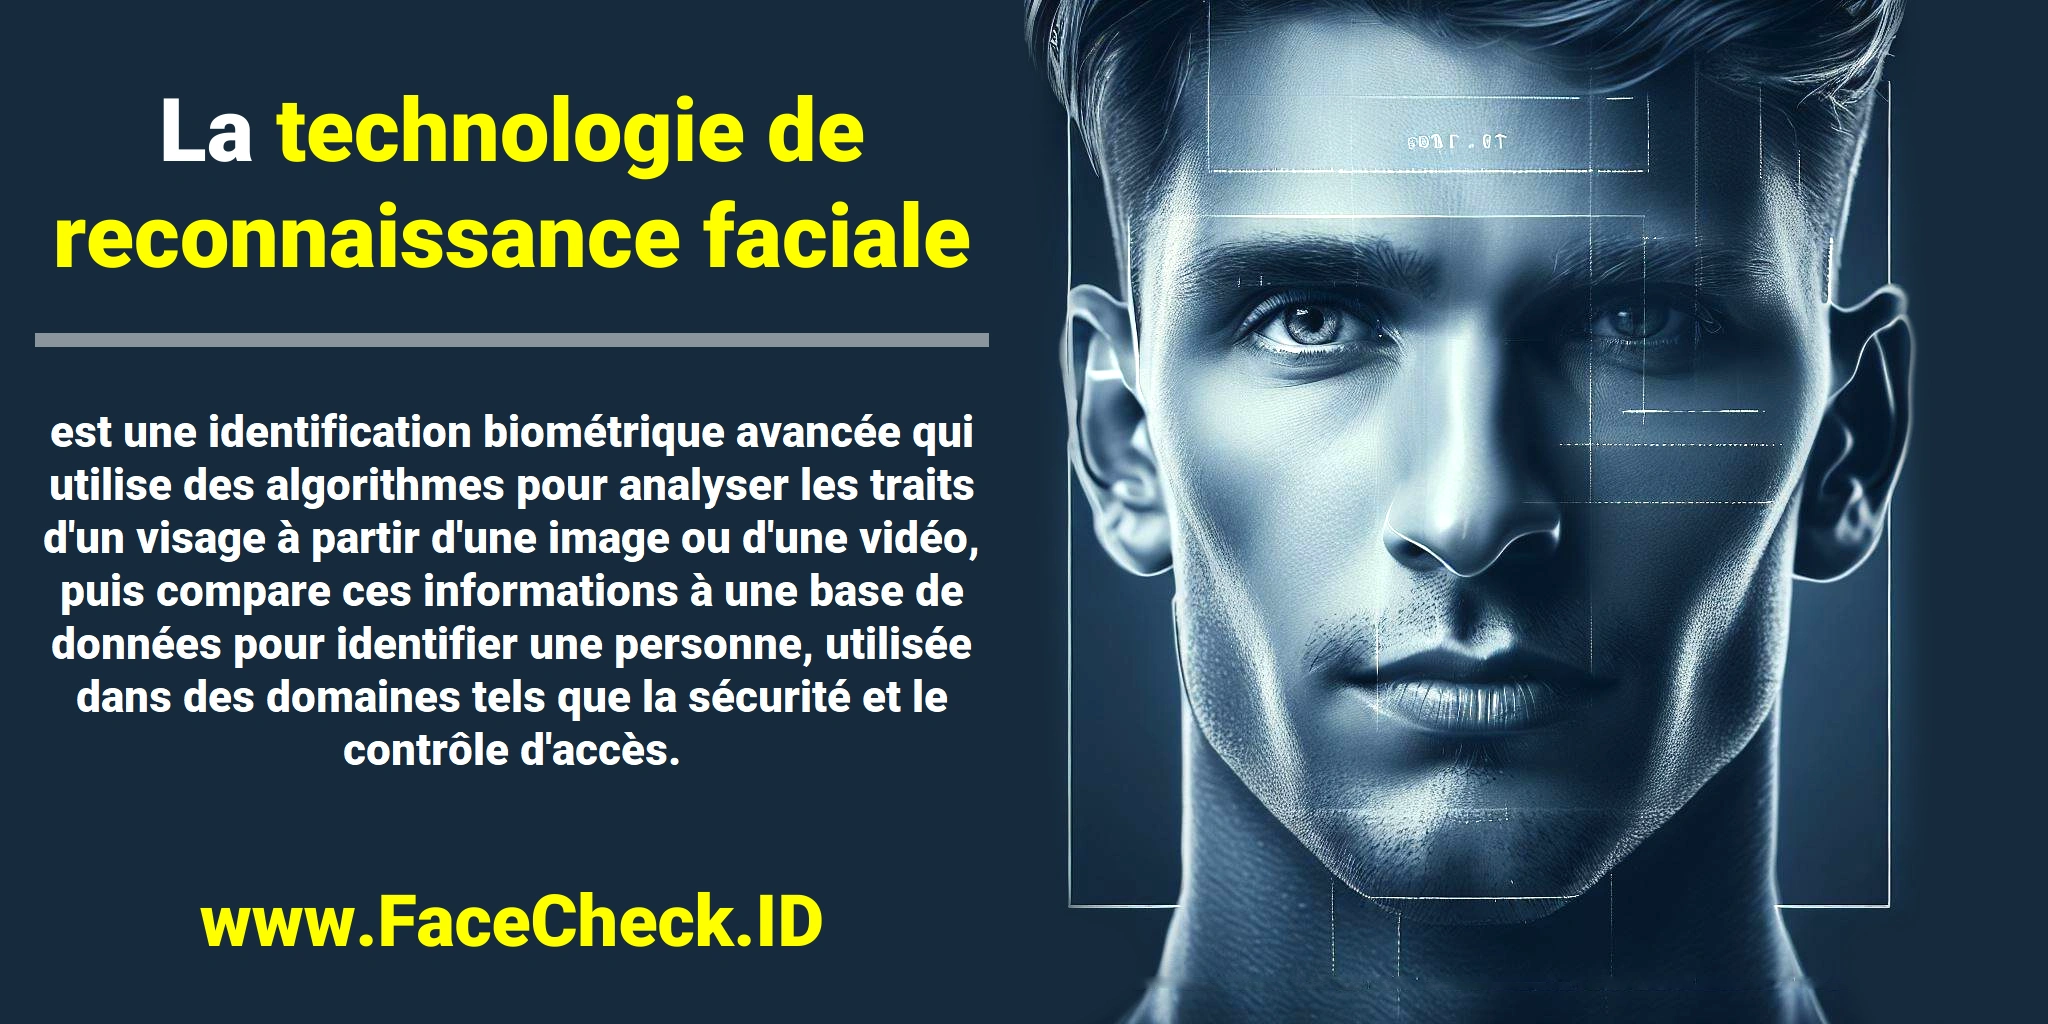 La <b>technologie de reconnaissance faciale</b> est une identification biométrique avancée qui utilise des algorithmes pour analyser les traits d'un visage à partir d'une image ou d'une vidéo, puis compare ces informations à une base de données pour identifier une personne, utilisée dans des domaines tels que la sécurité et le contrôle d'accès.